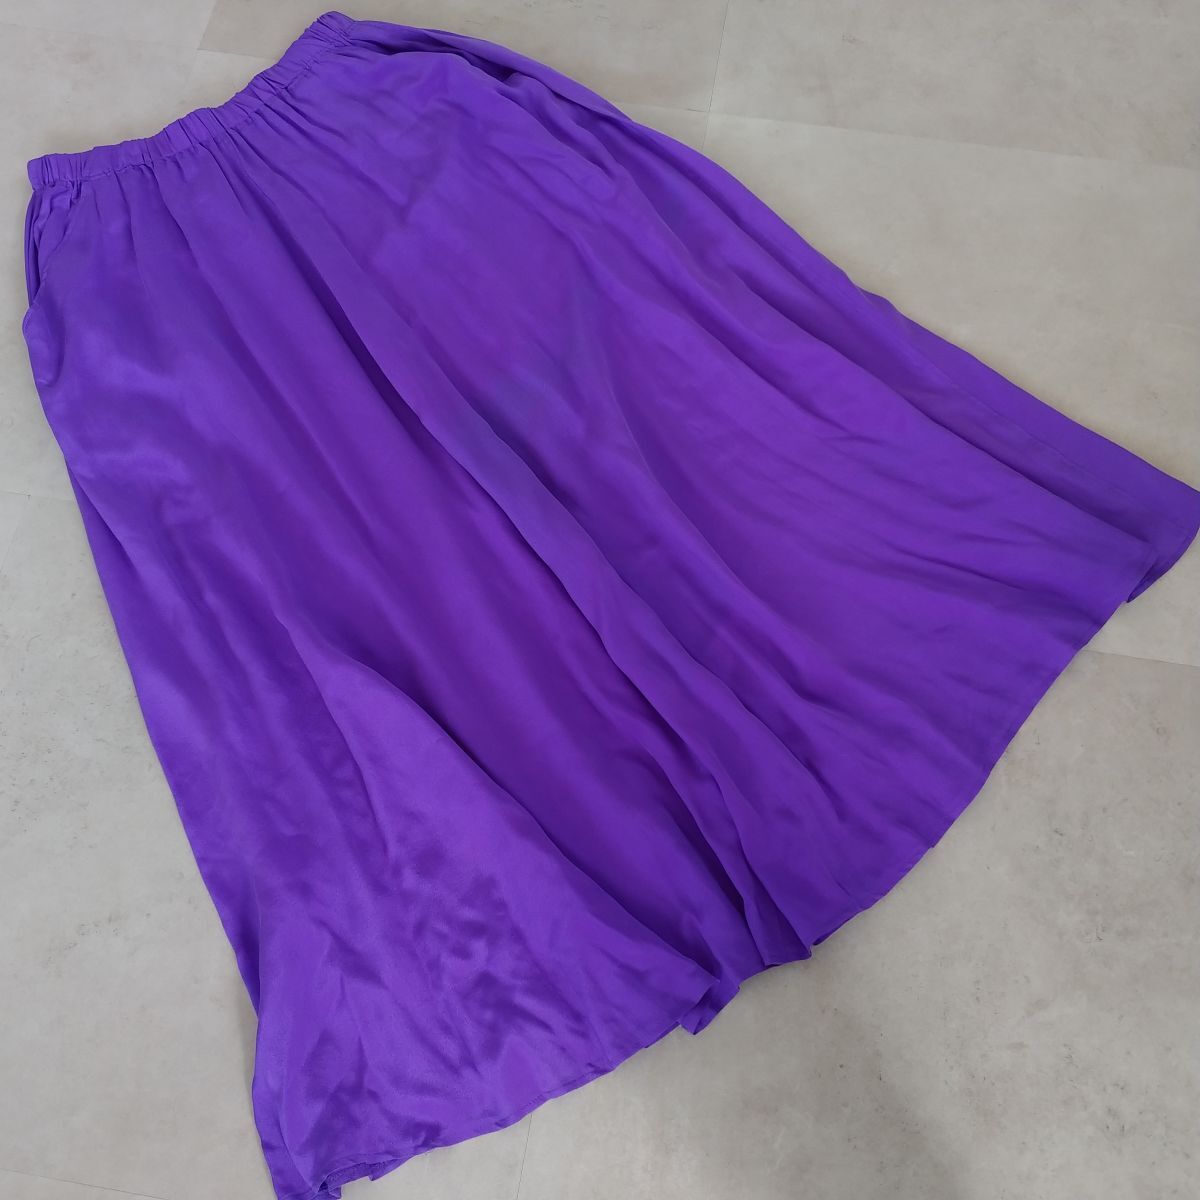 【☆1円スタート☆】KENAR ケナ レディース フレア スカート SILK シルク 絹 100% 紫 パープル サイズ L ファッション #700_画像2